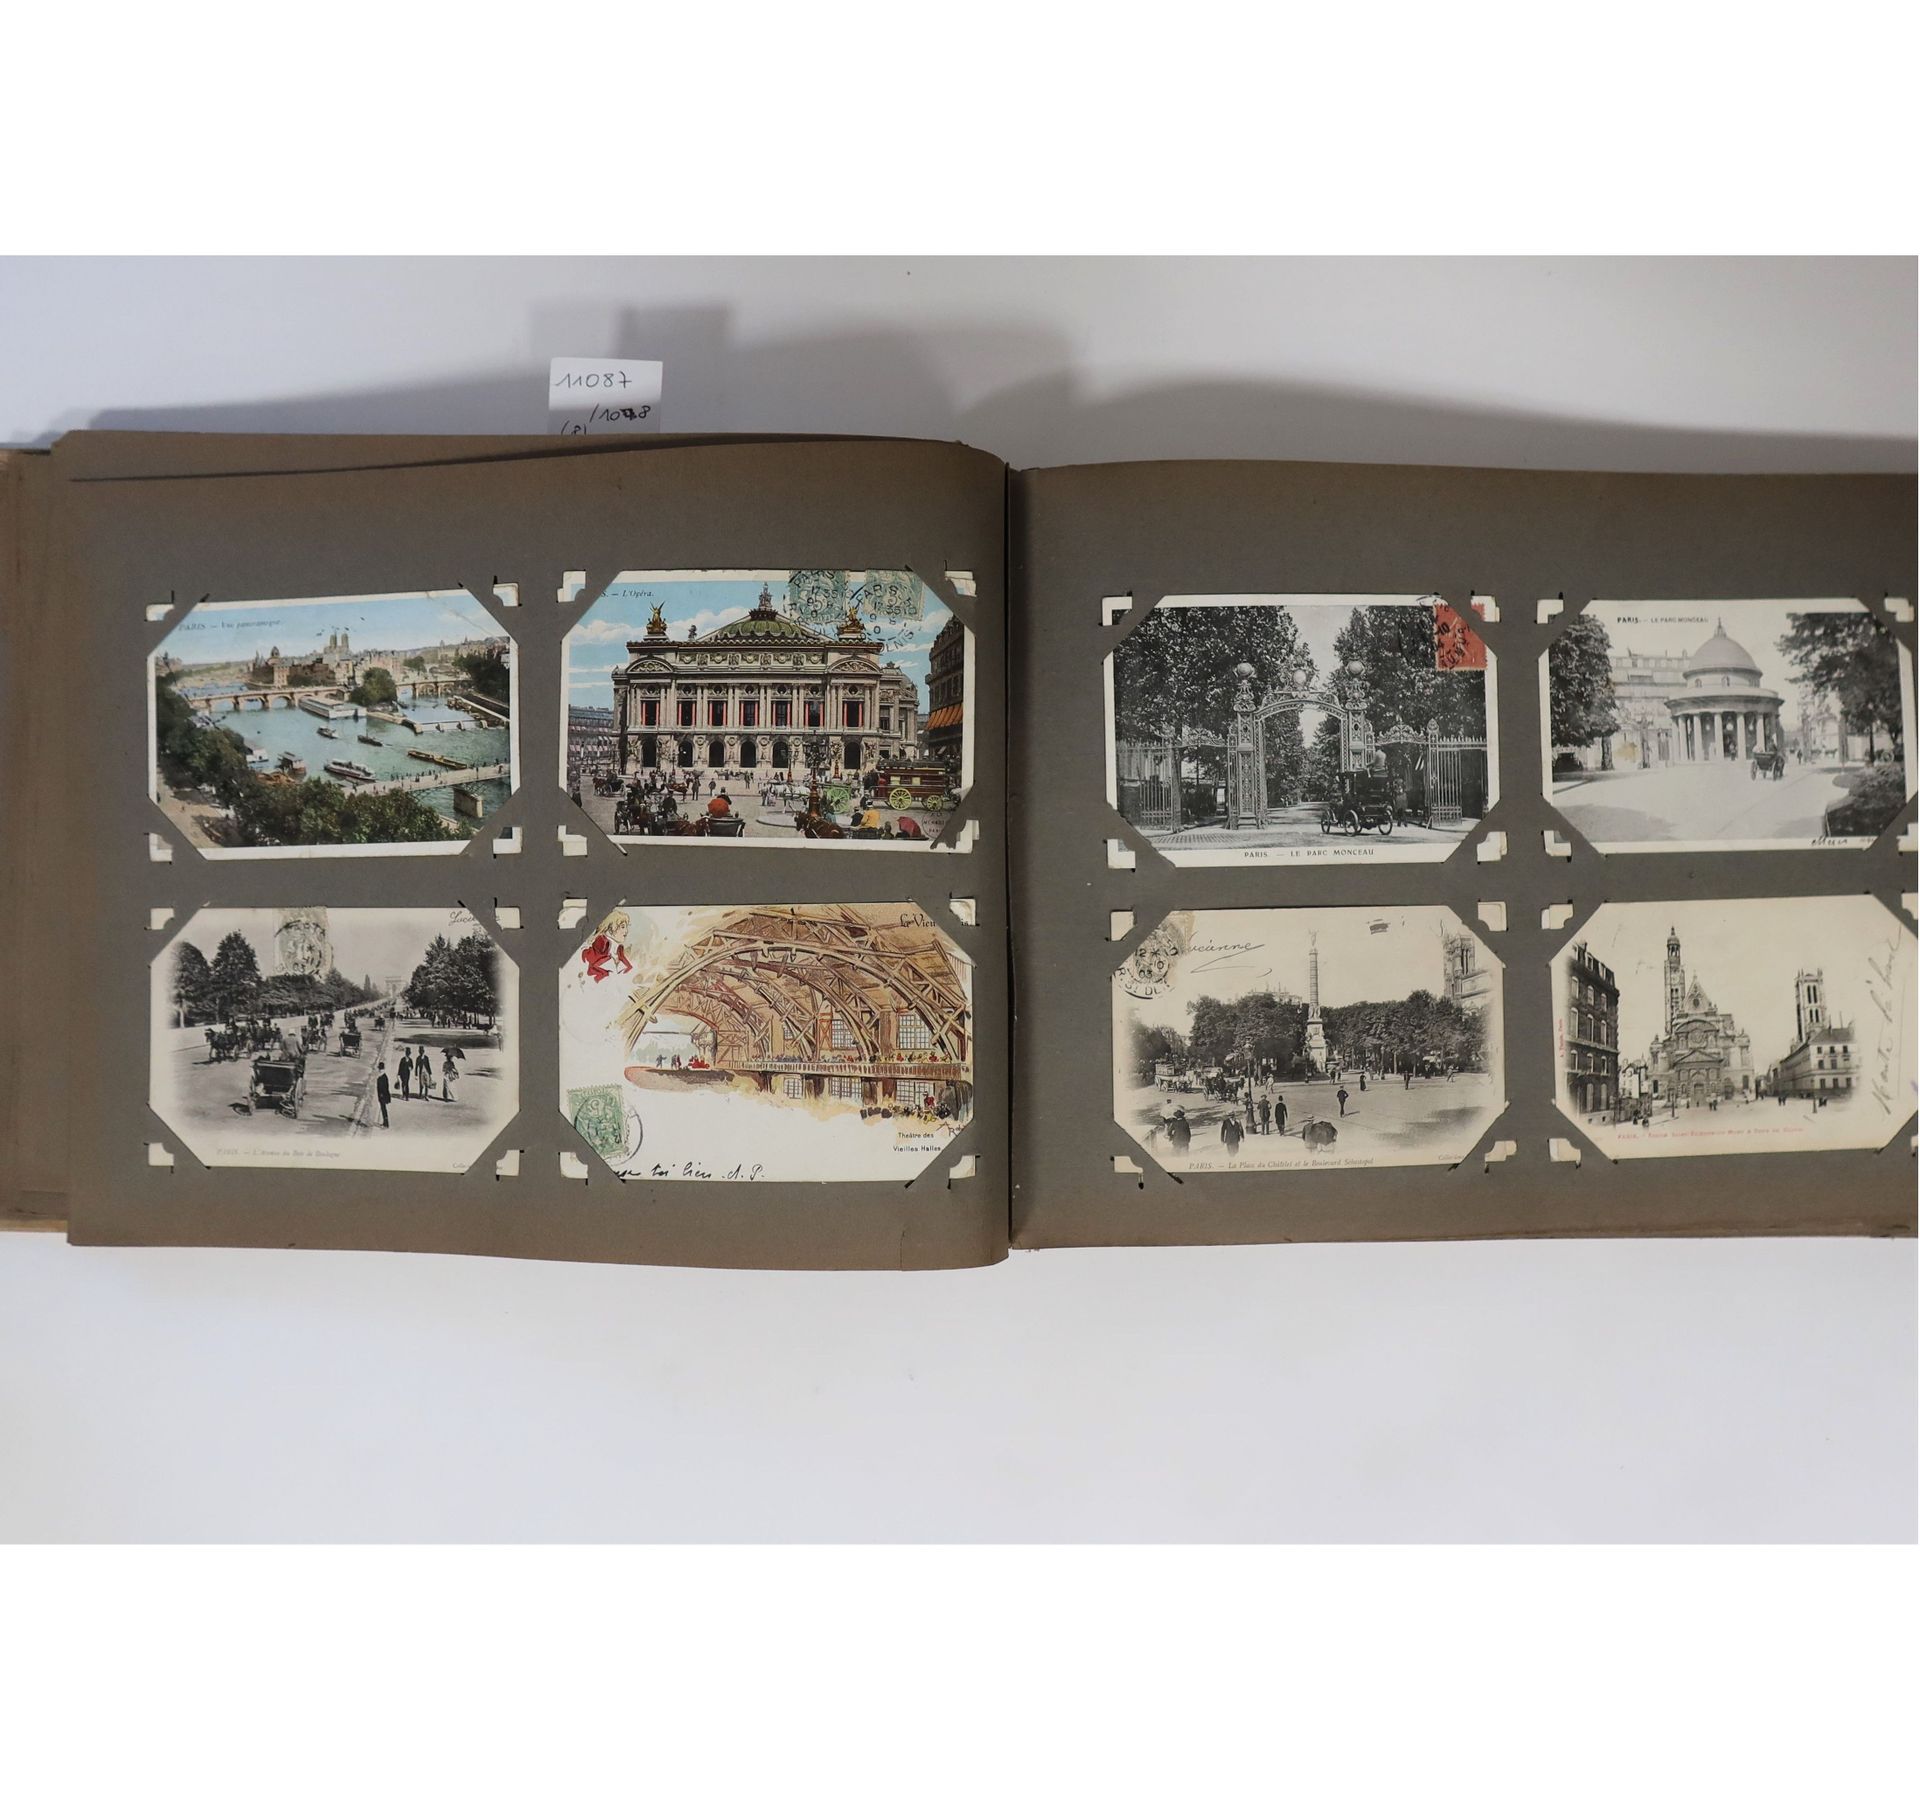 Null [法国]
一套主要由战前和20世纪50年代的新法国和摩纳哥组成的邮票，有些价值不错，数量多，评价高。

包括一个有200多张明信片的相册。